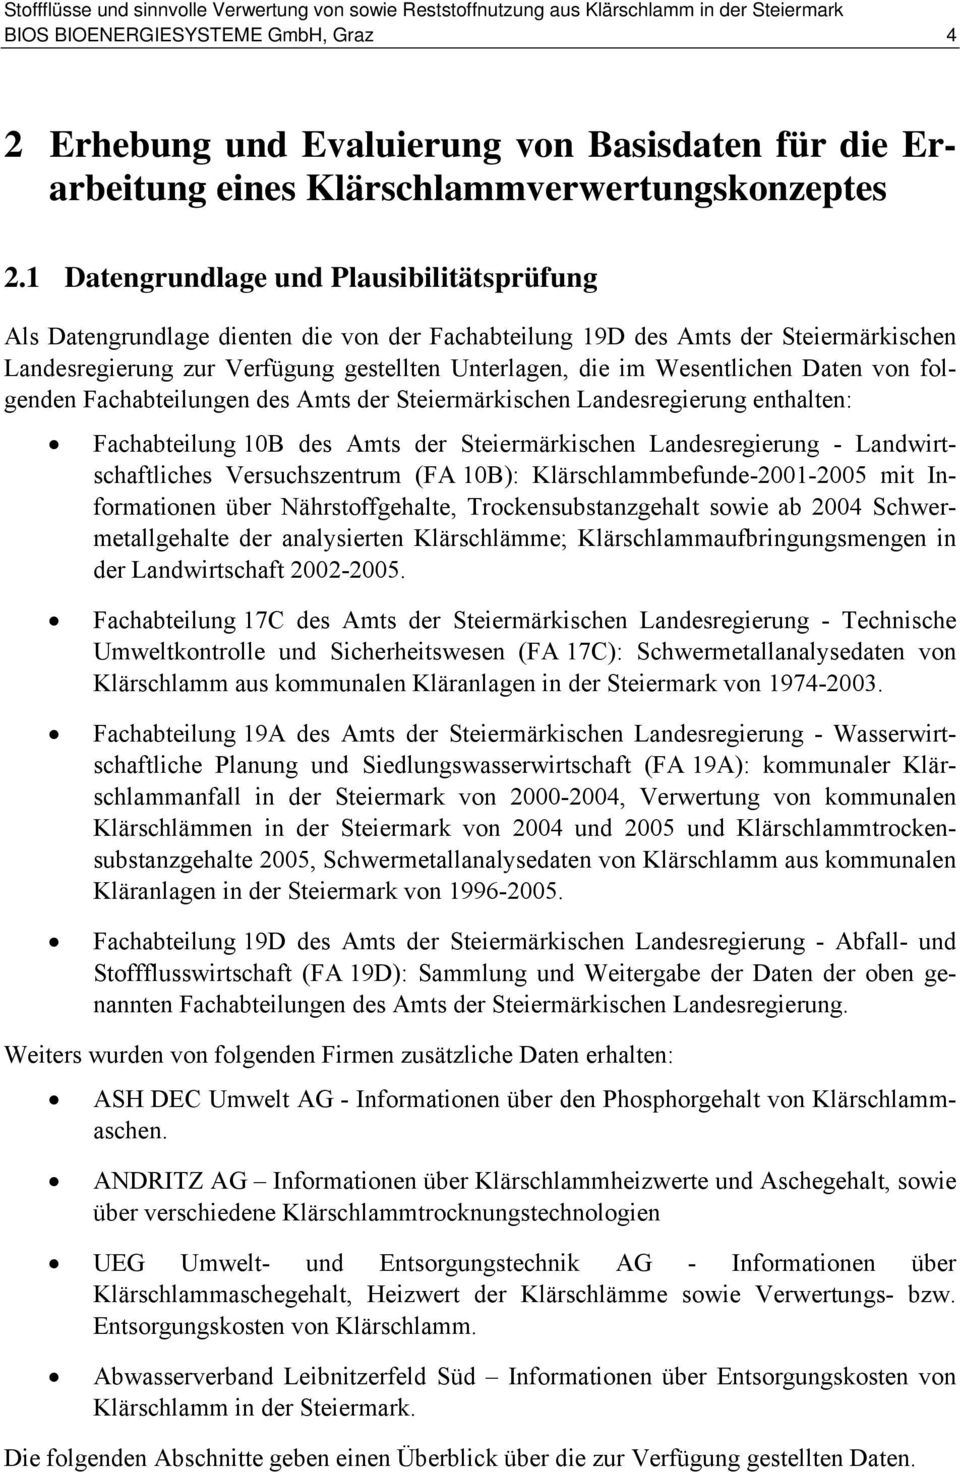 Wesentlichen Daten von folgenden Fachabteilungen des Amts der Steiermärkischen Landesregierung enthalten: Fachabteilung 10B des Amts der Steiermärkischen Landesregierung - Landwirtschaftliches